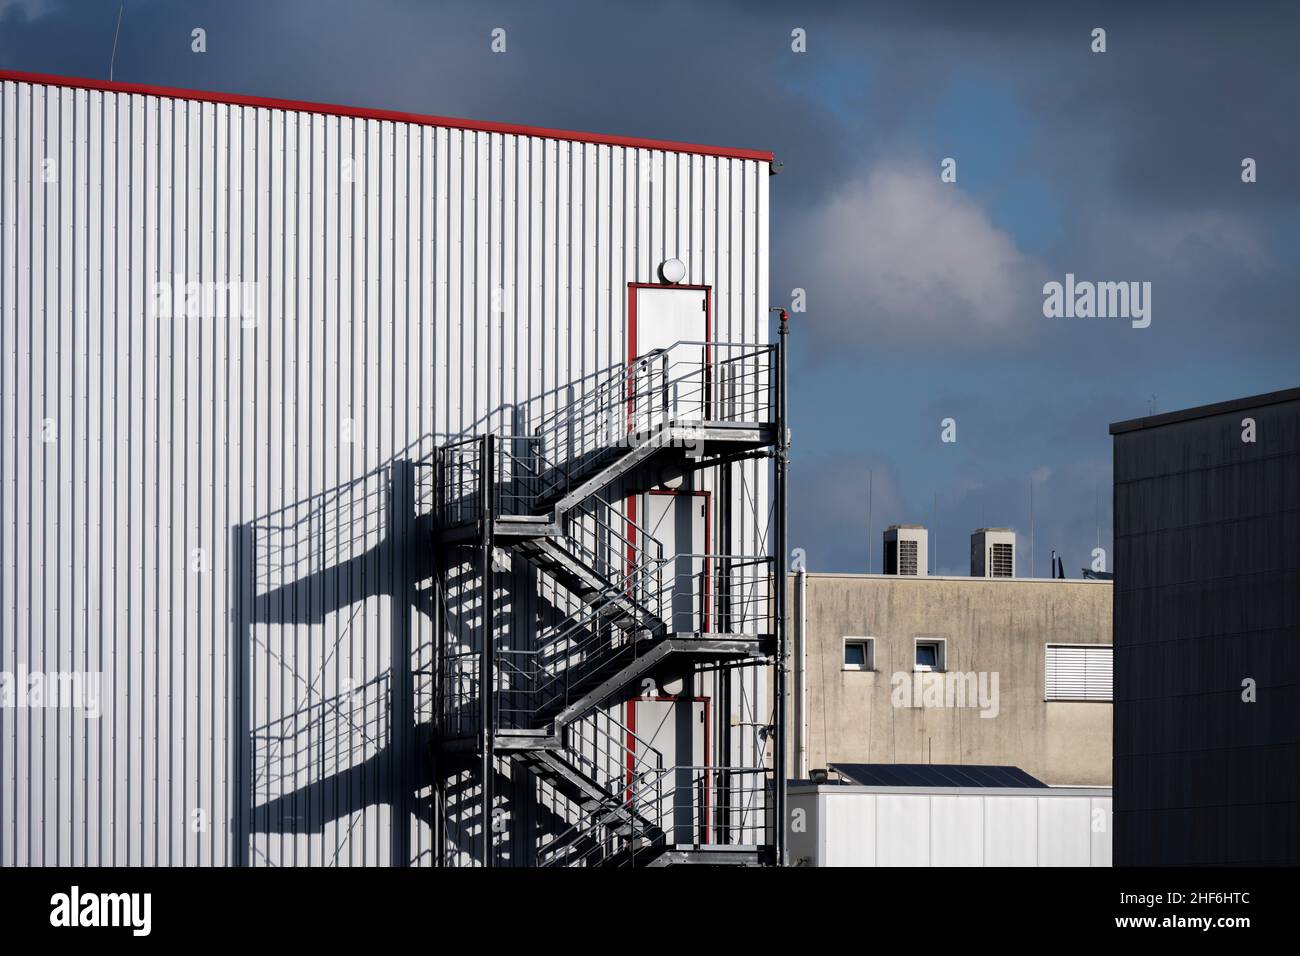 Magazzino, scale esterne, cornici rosse, nuvole, area industriale Foto Stock